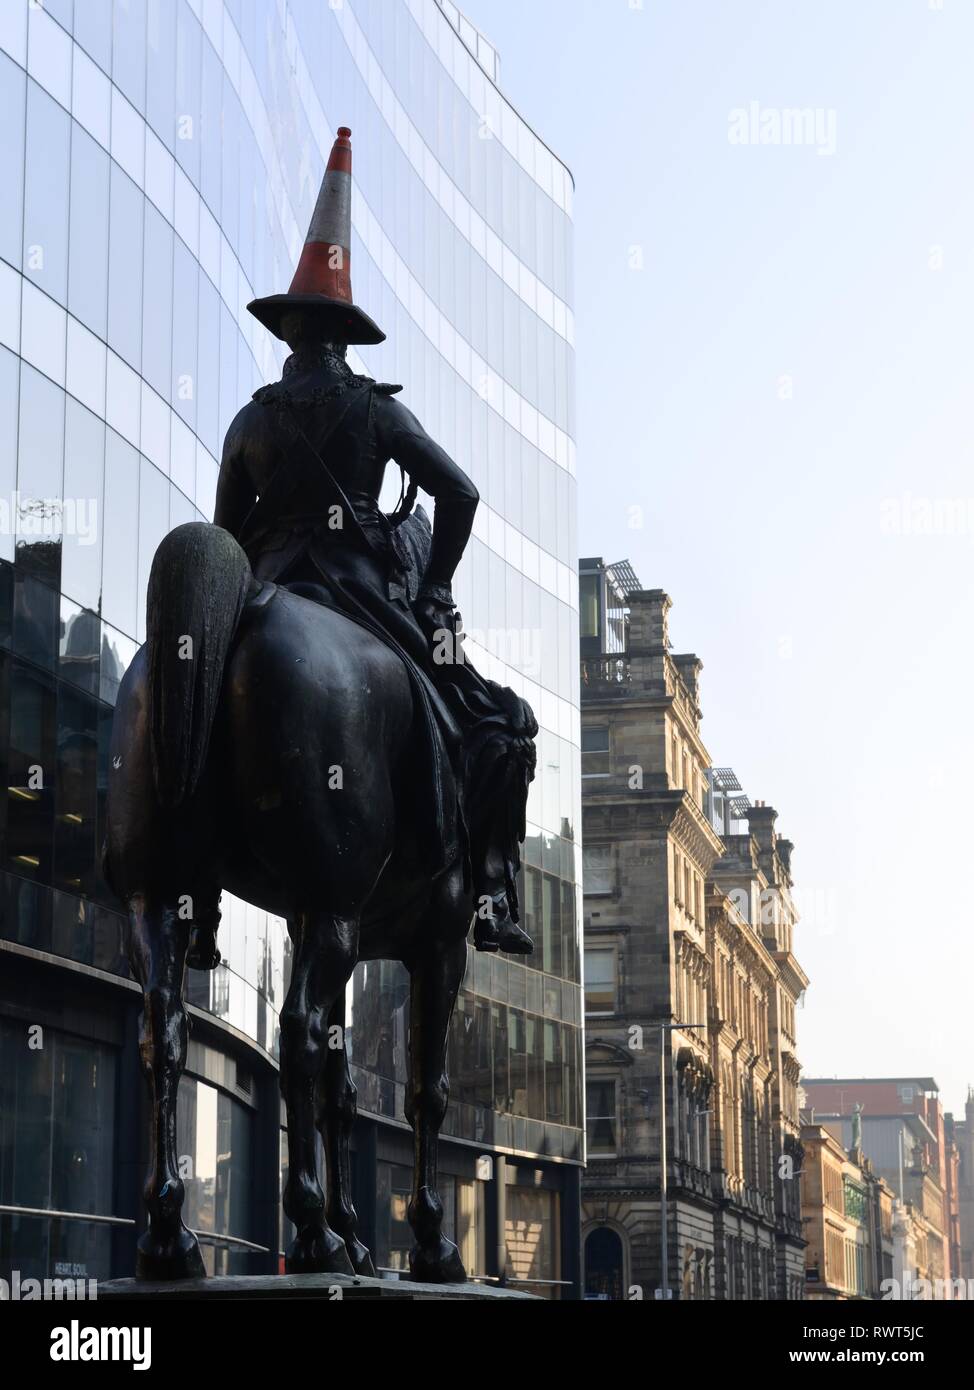 La célèbre statue du duc de Wellington du cheval et du cavalier avec le cône de trafic plus humoristique sur la tête à Glasgow, Écosse, Royaume-Uni, Europe. Banque D'Images